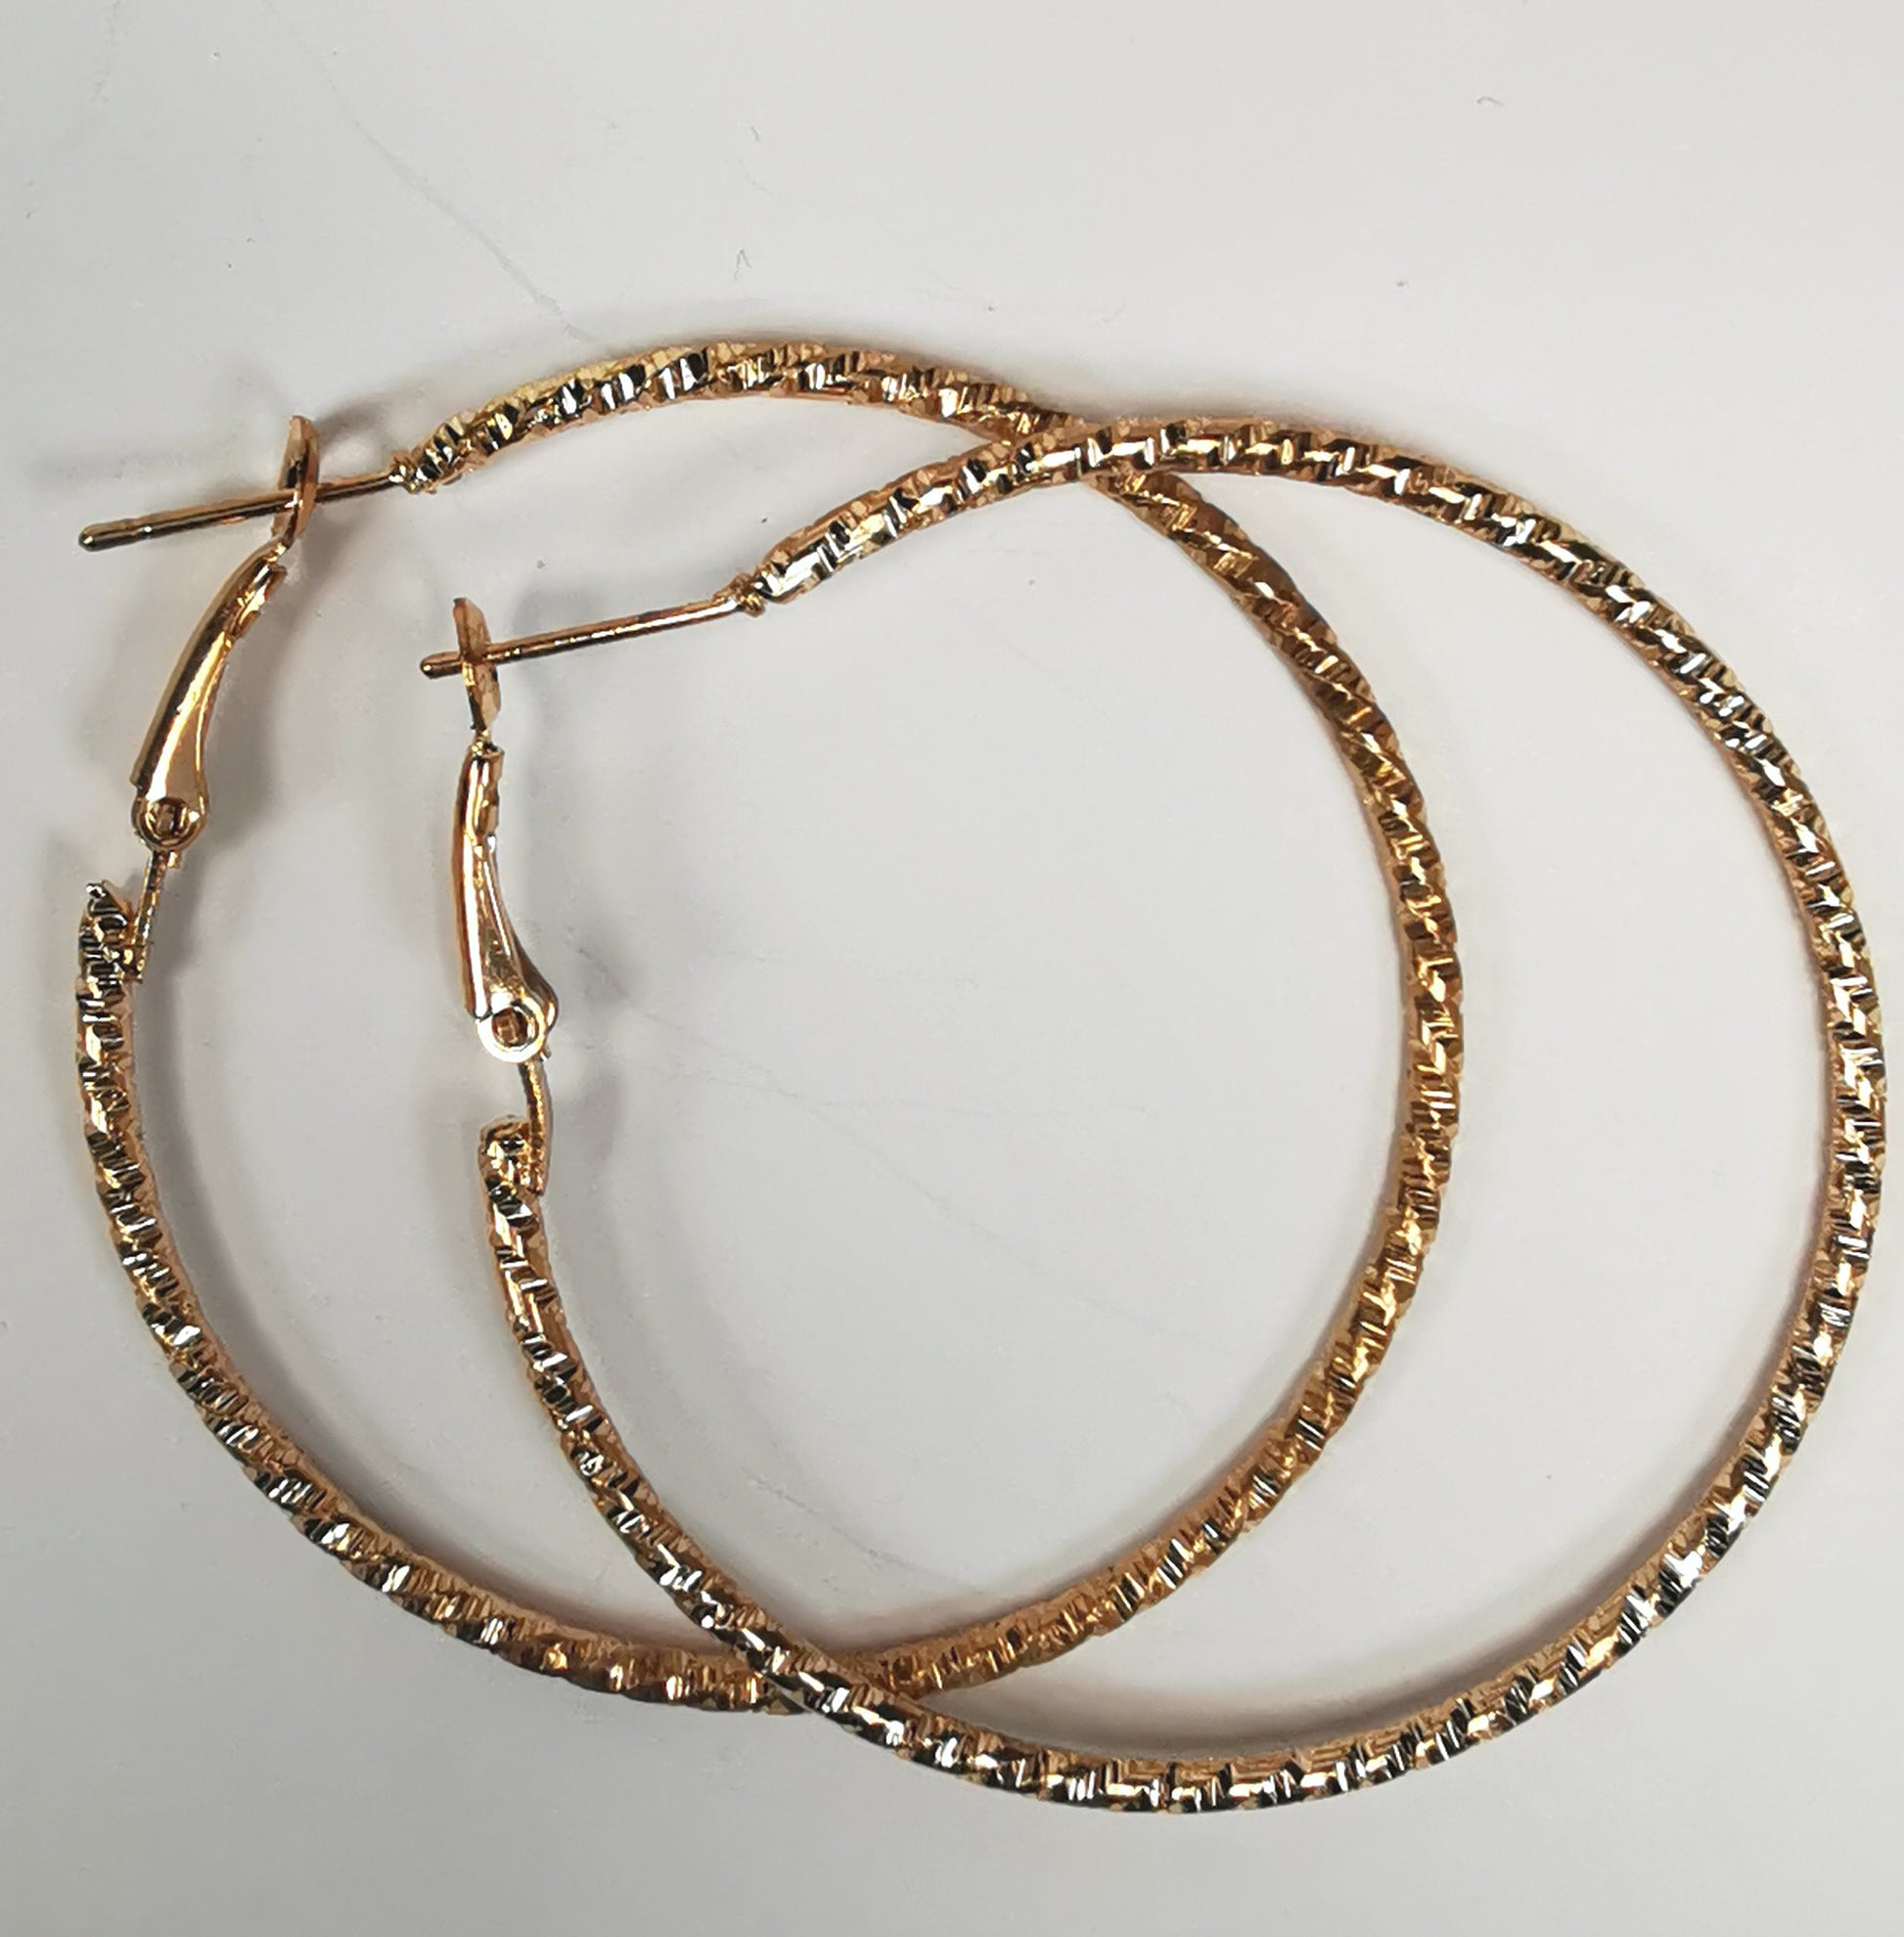 Boucles d'oreilles créoles dorées 50mm de diamètre, fil de 1.5mm, surface texturée. Posées l'une sur l'autre sur un fond blanc, vue de dessus.